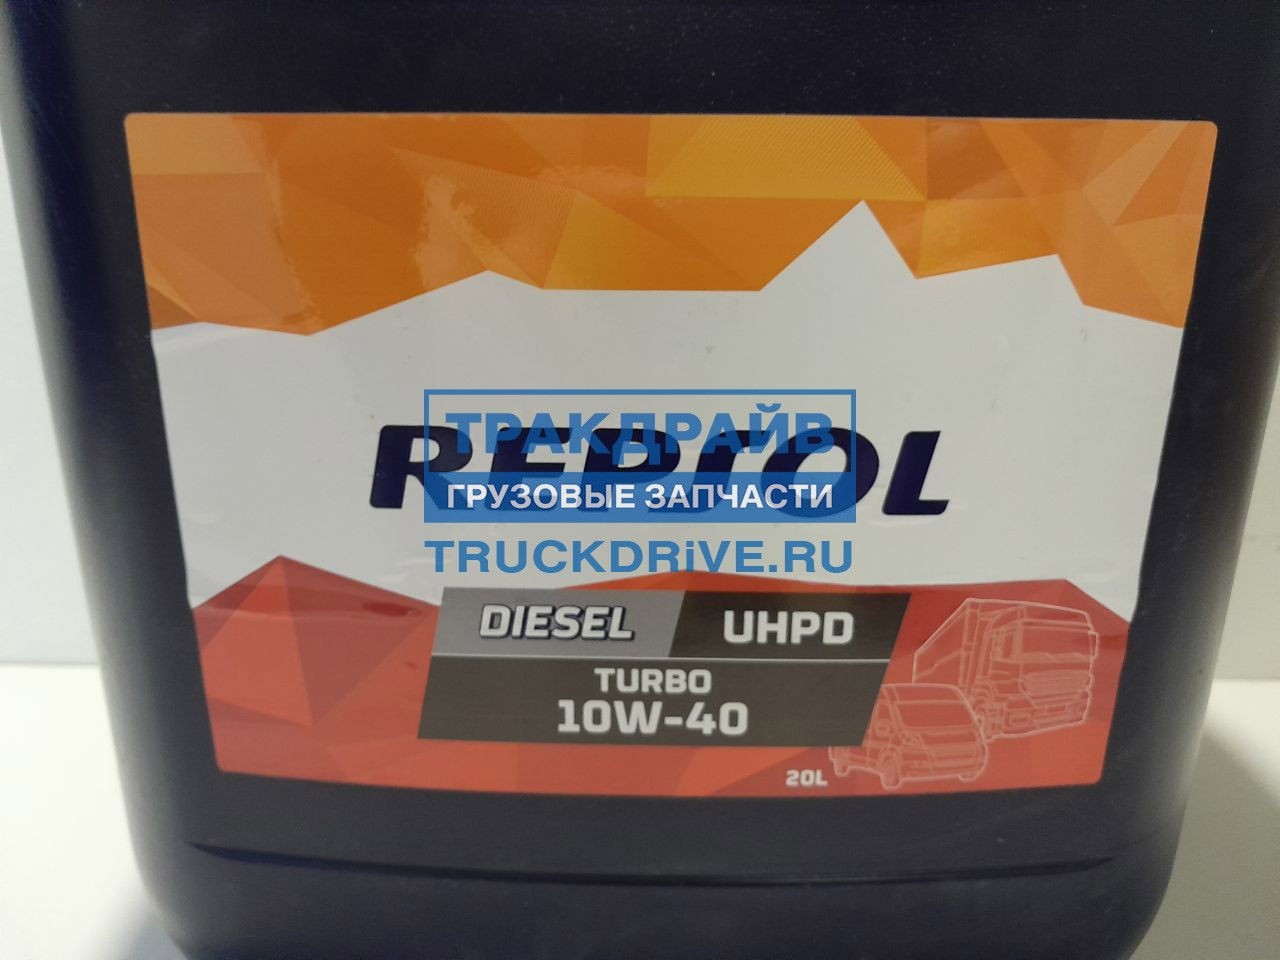 Comprar Repsol Diesel Turbo UHPD 10W40